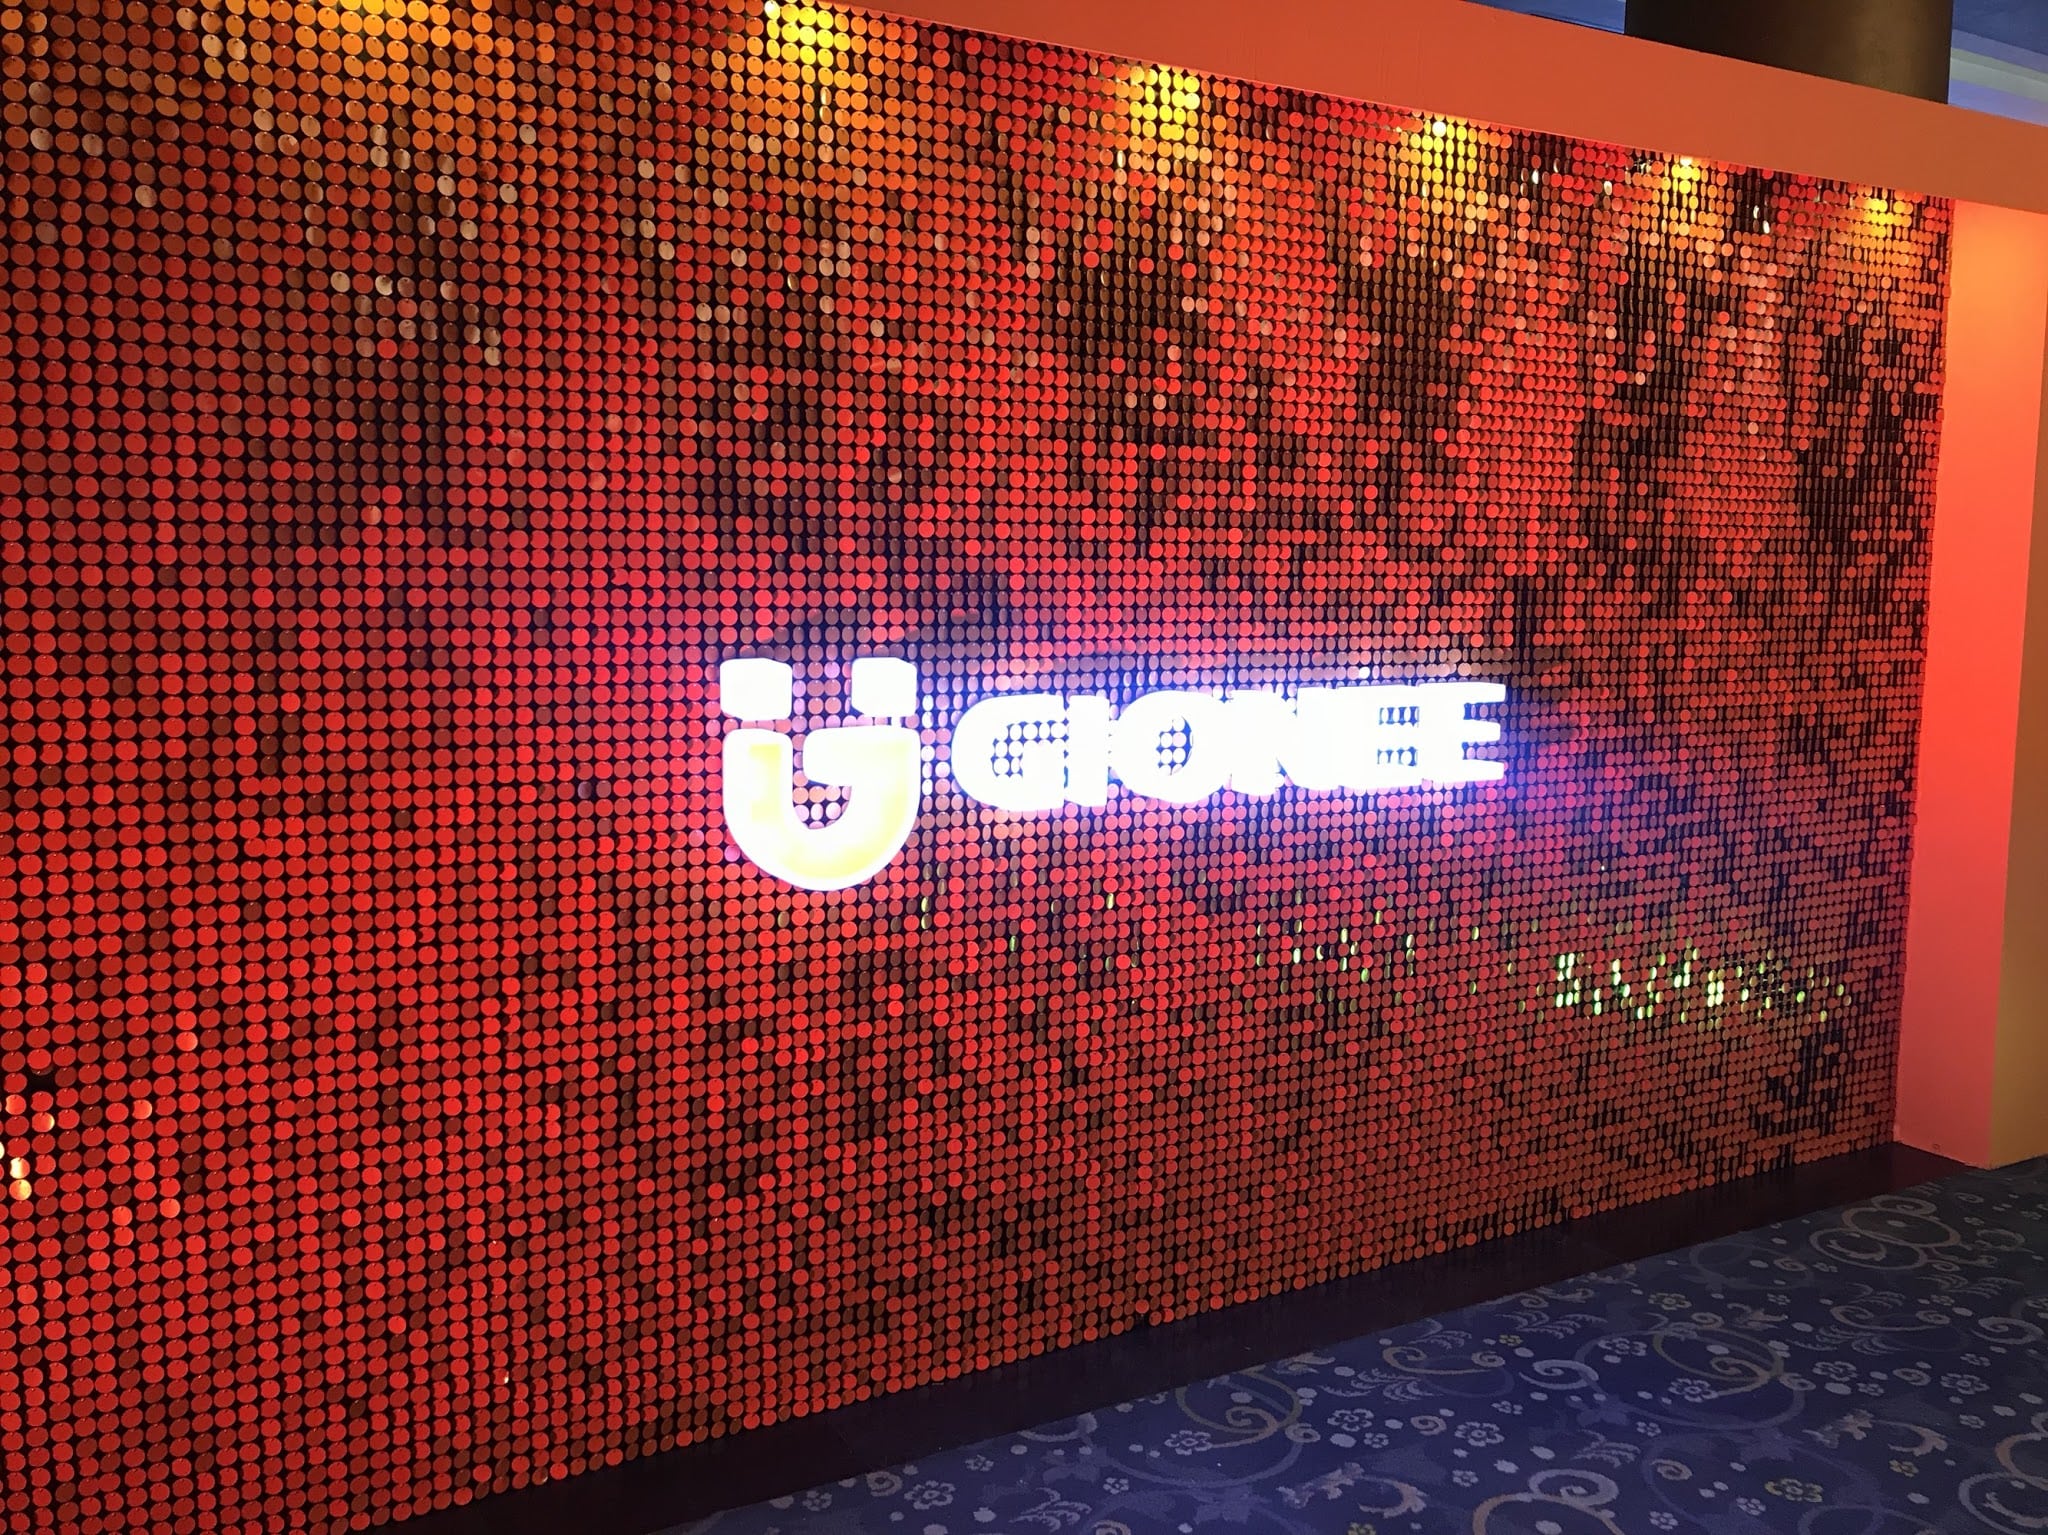 شركة Gionee تدخل السوق المصري بخمسة هواتف جديدة للفئات المختلفة